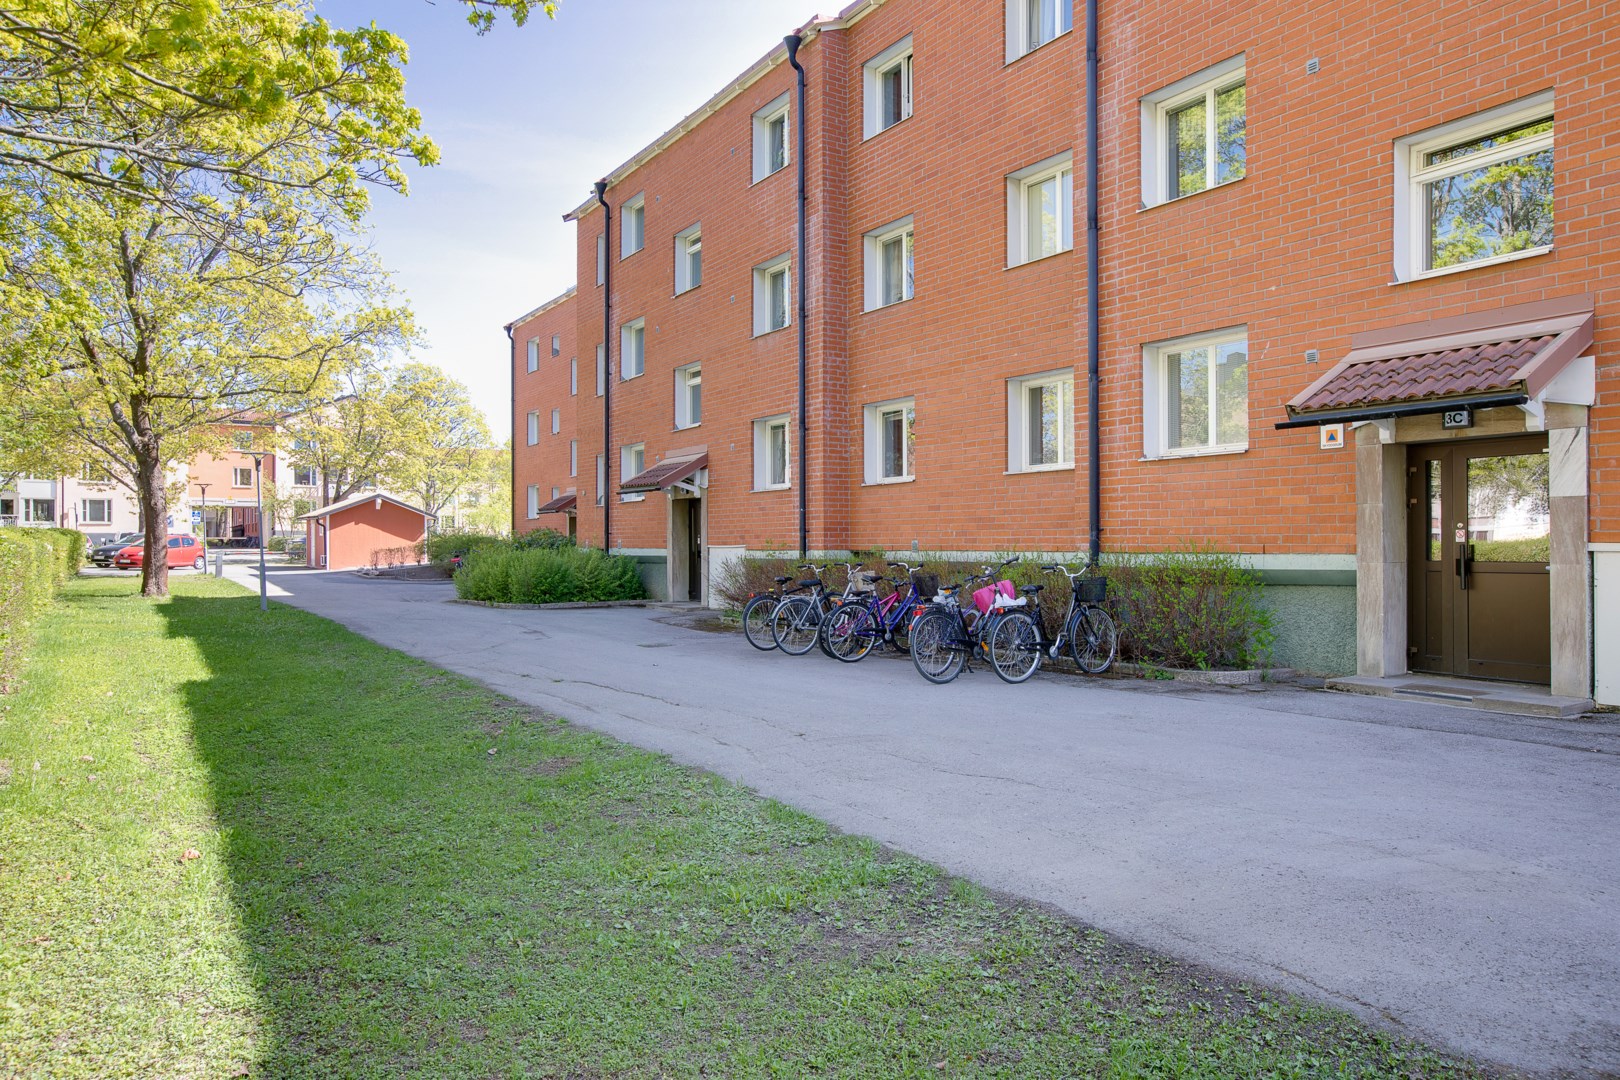 Bostadsbild från Gröna gatan 3C, Kommande i Salabacke, Uppsala